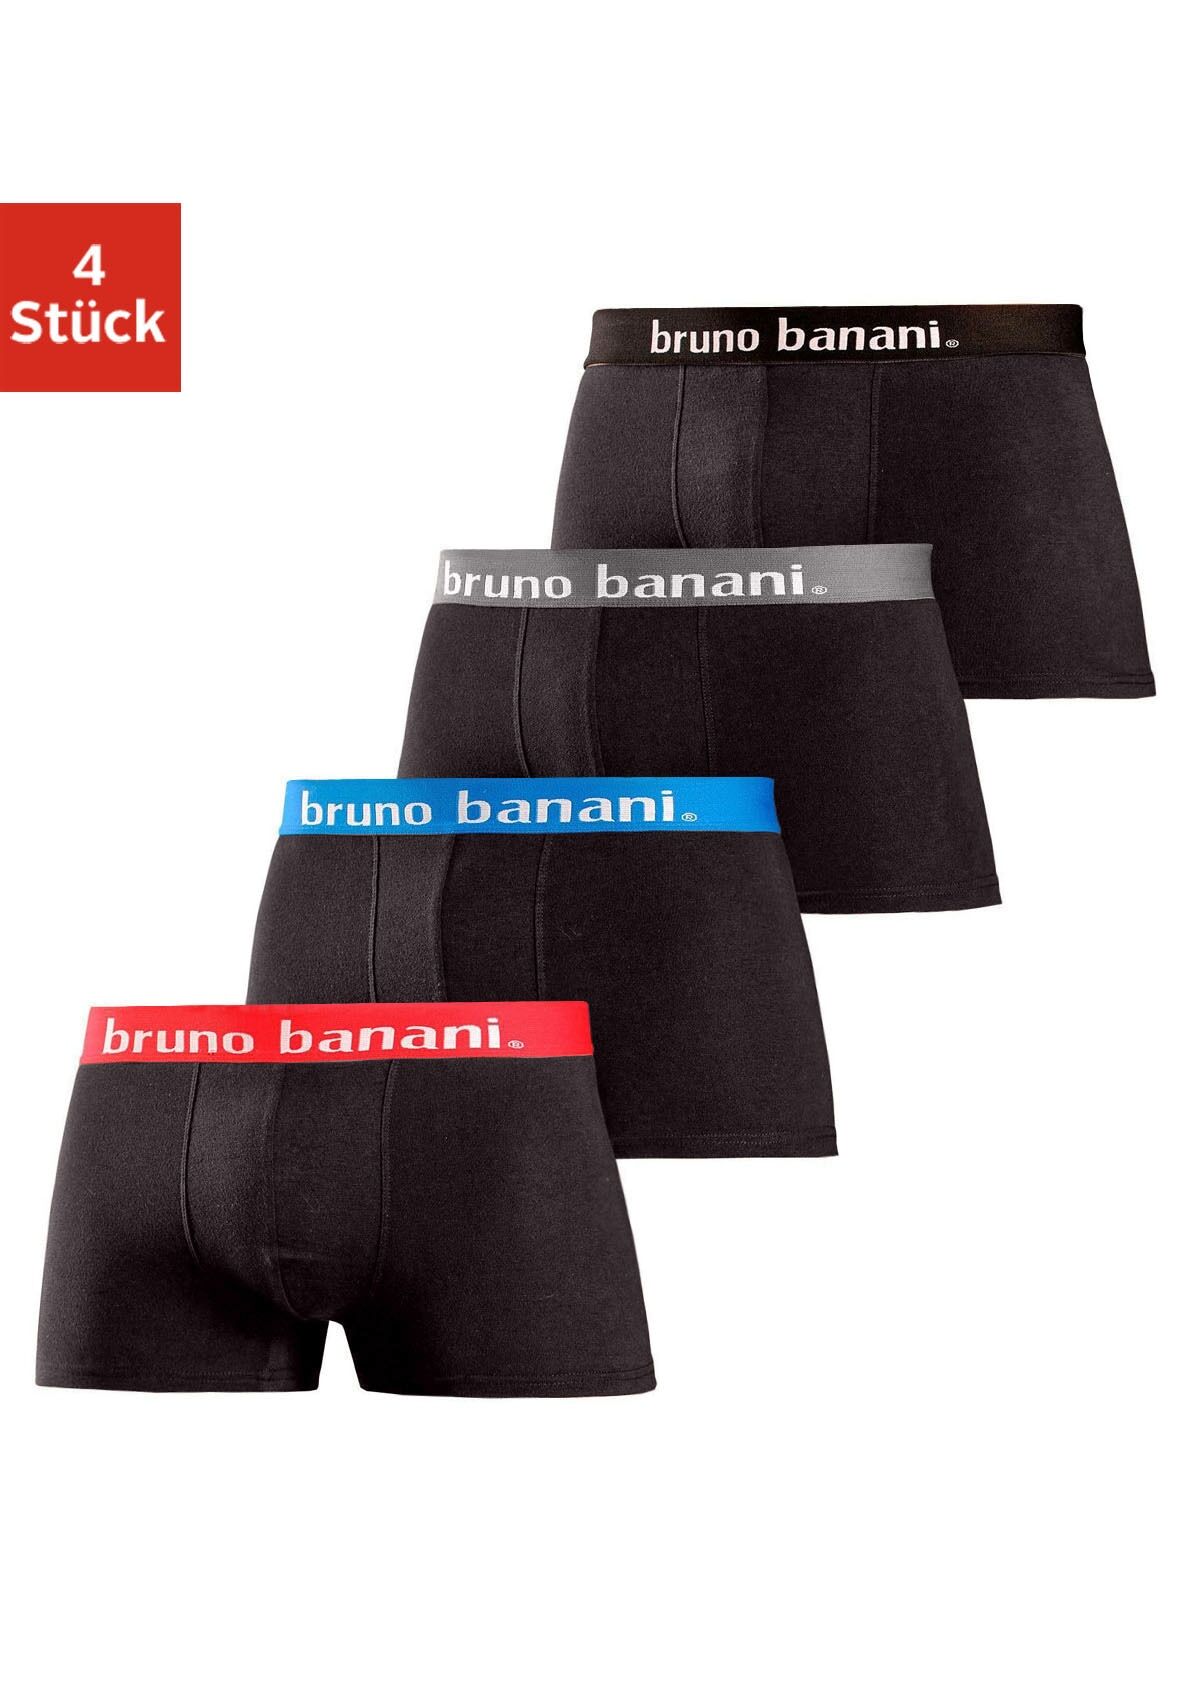 Boxershorts BRUNO BANANI Gr. XL, 4 St., schwarz Herren Unterhosen Wäsche Bademode in Hipster-Form uni oder gemustert